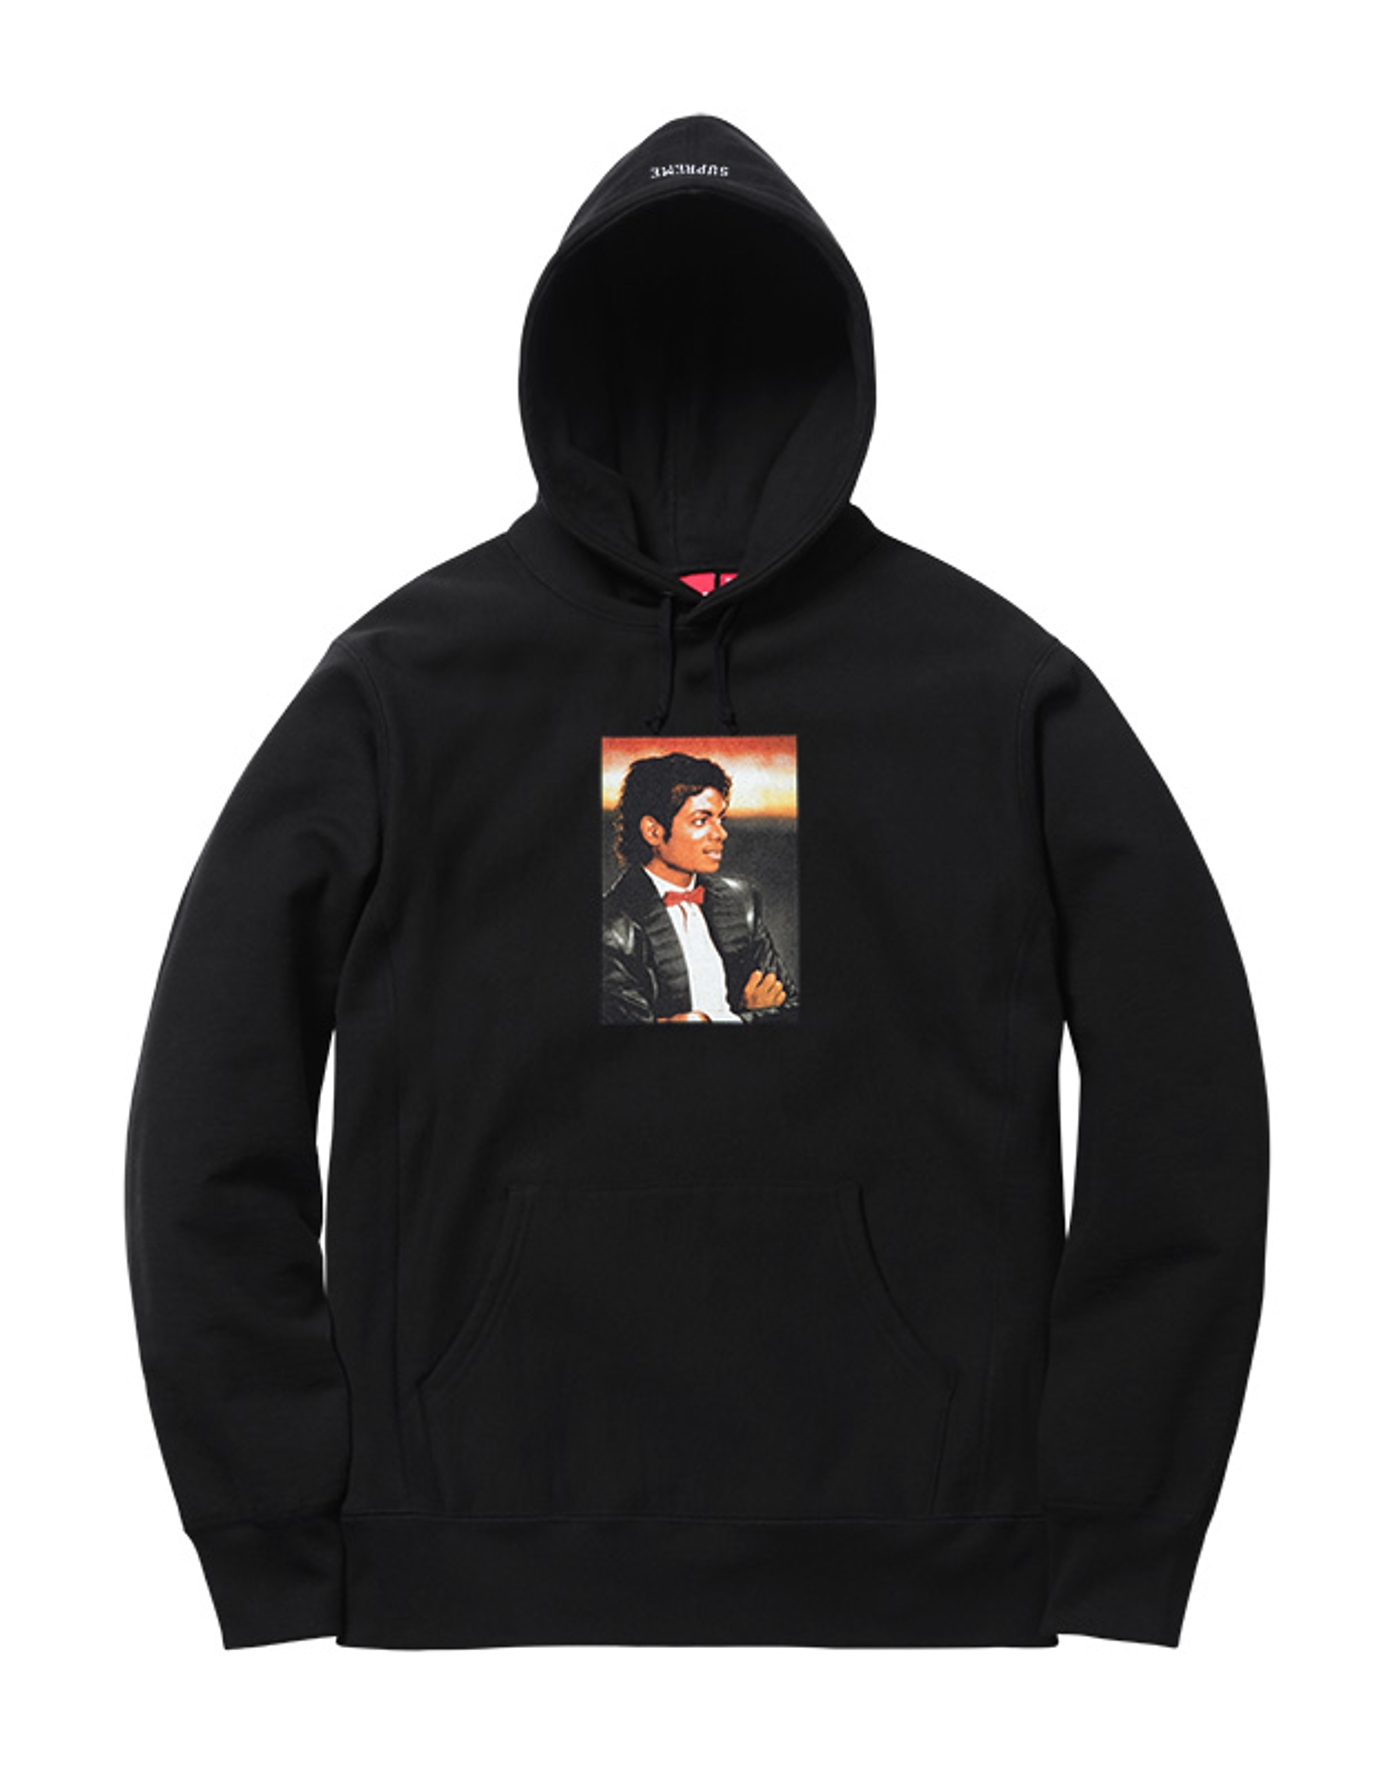 Michael Jackson Hooded Sweatshirt (3/10)